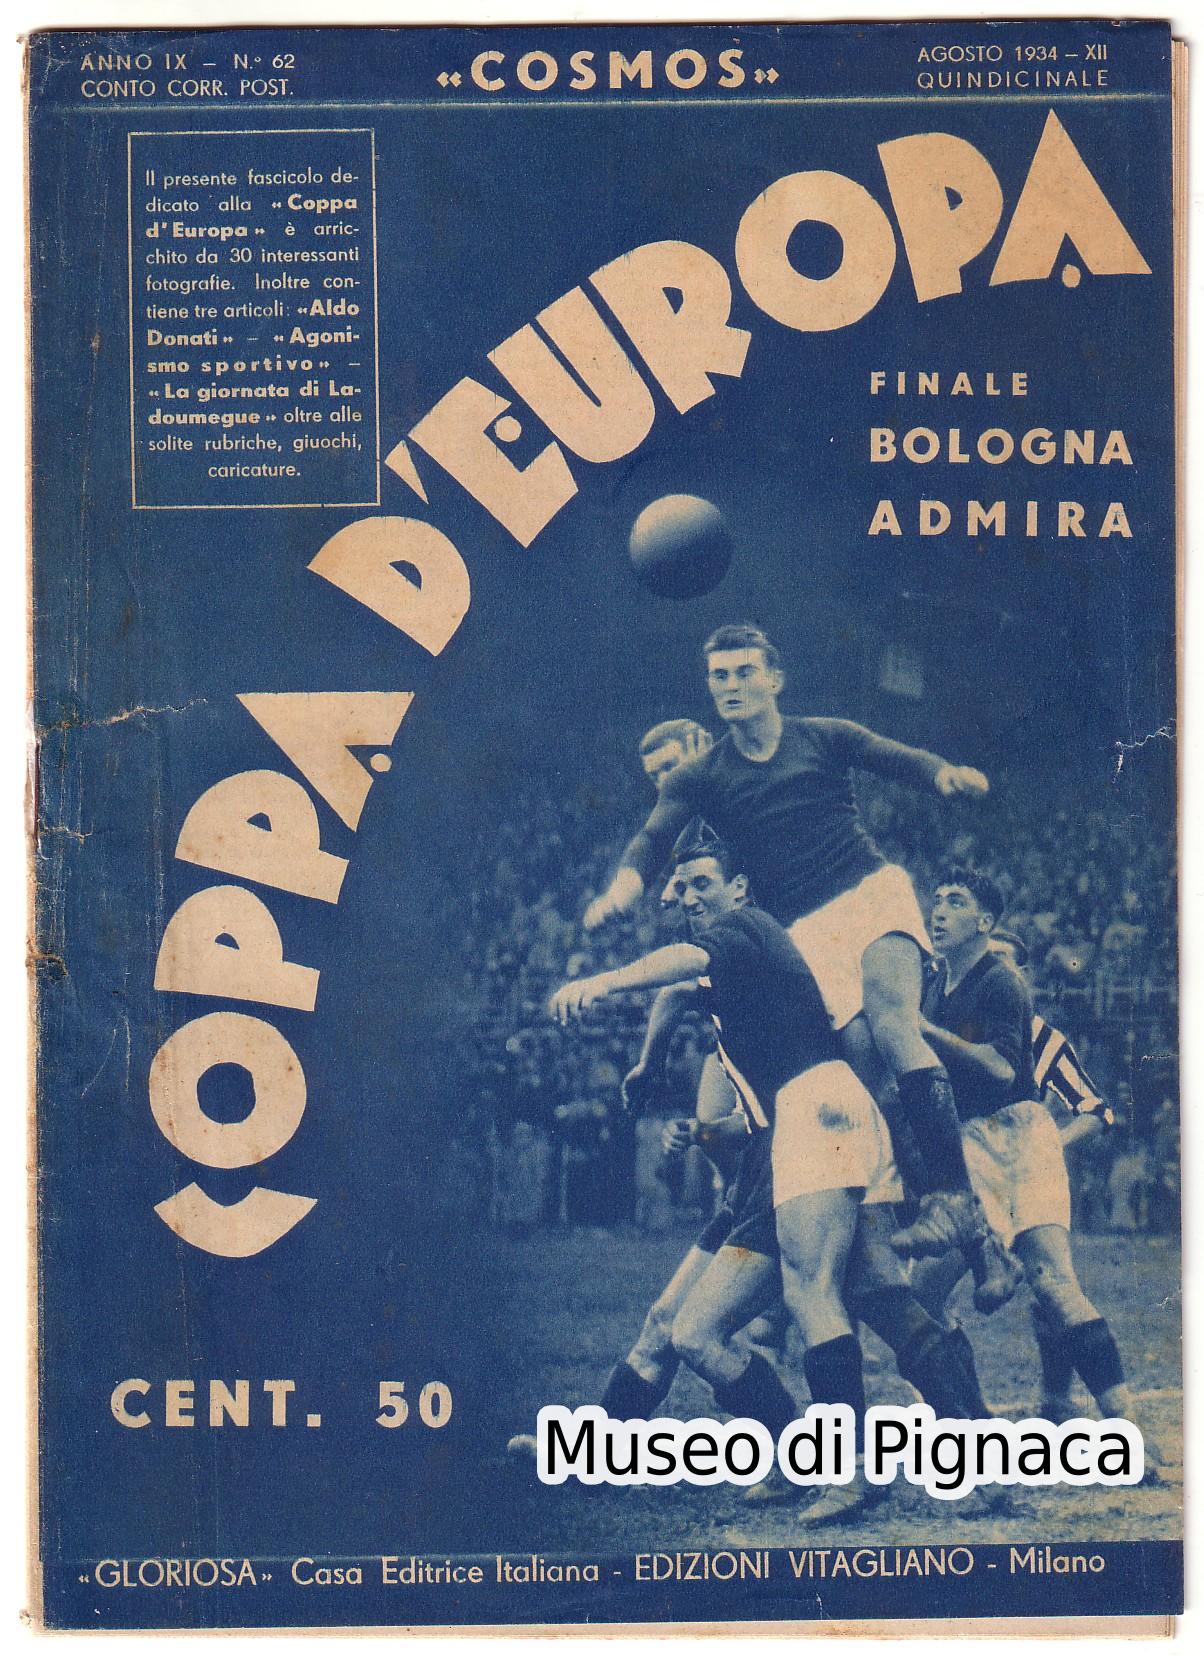 1934 - COSMOS - Coppa Europa - finale Bologna - Admira